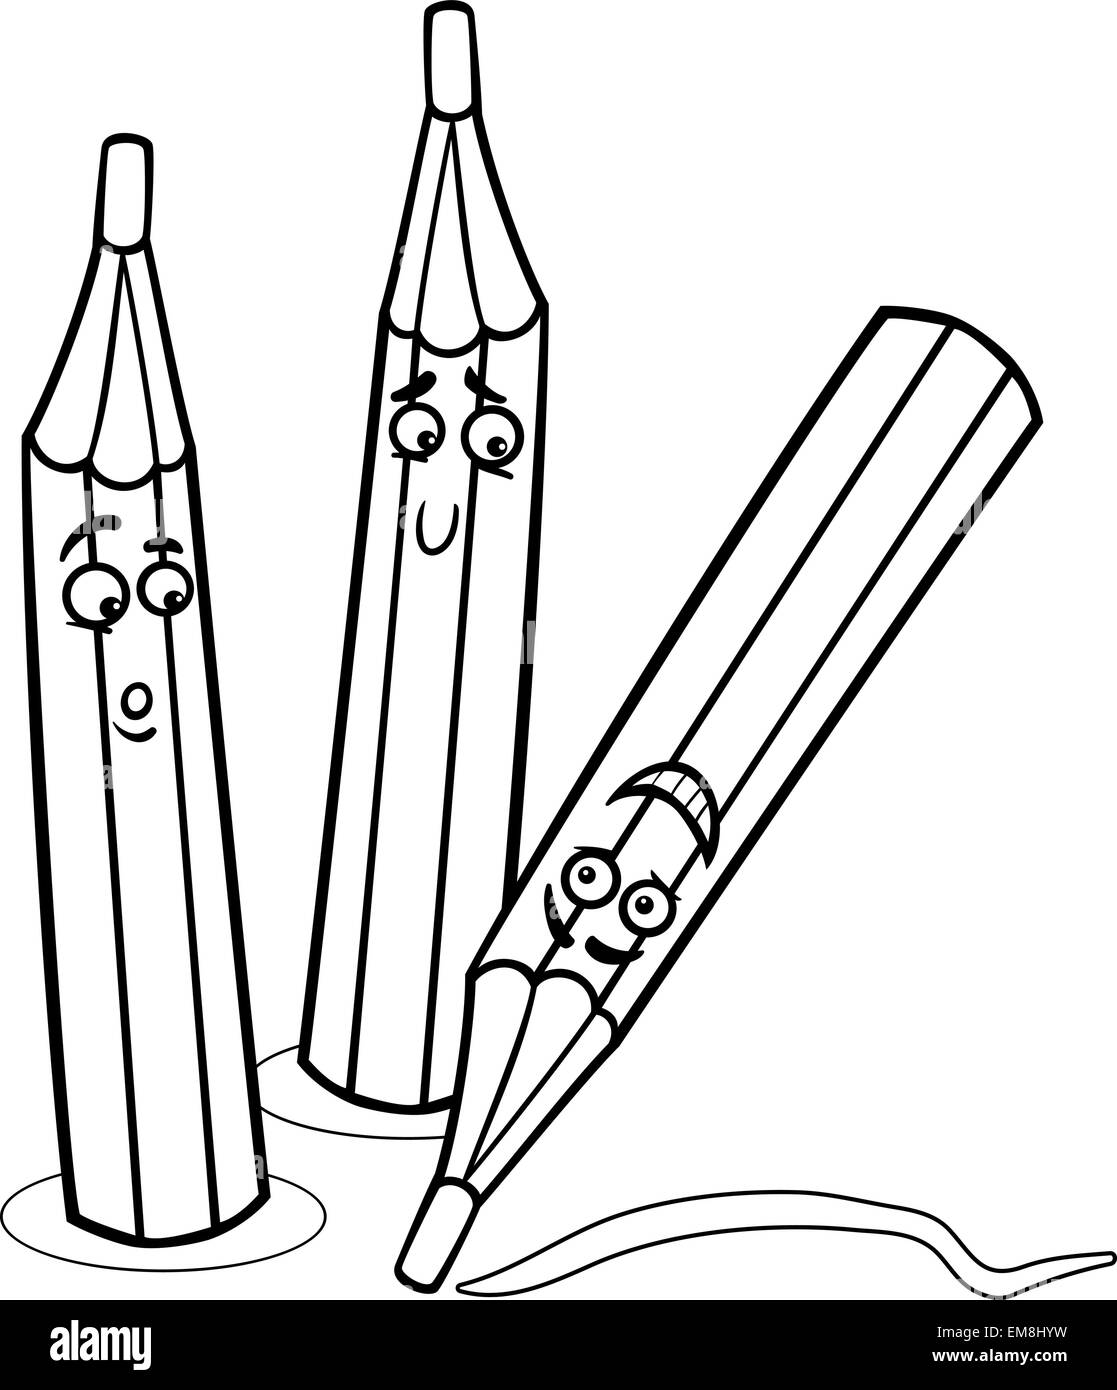 Crayones para colorear Imágenes de stock en blanco y negro - Alamy